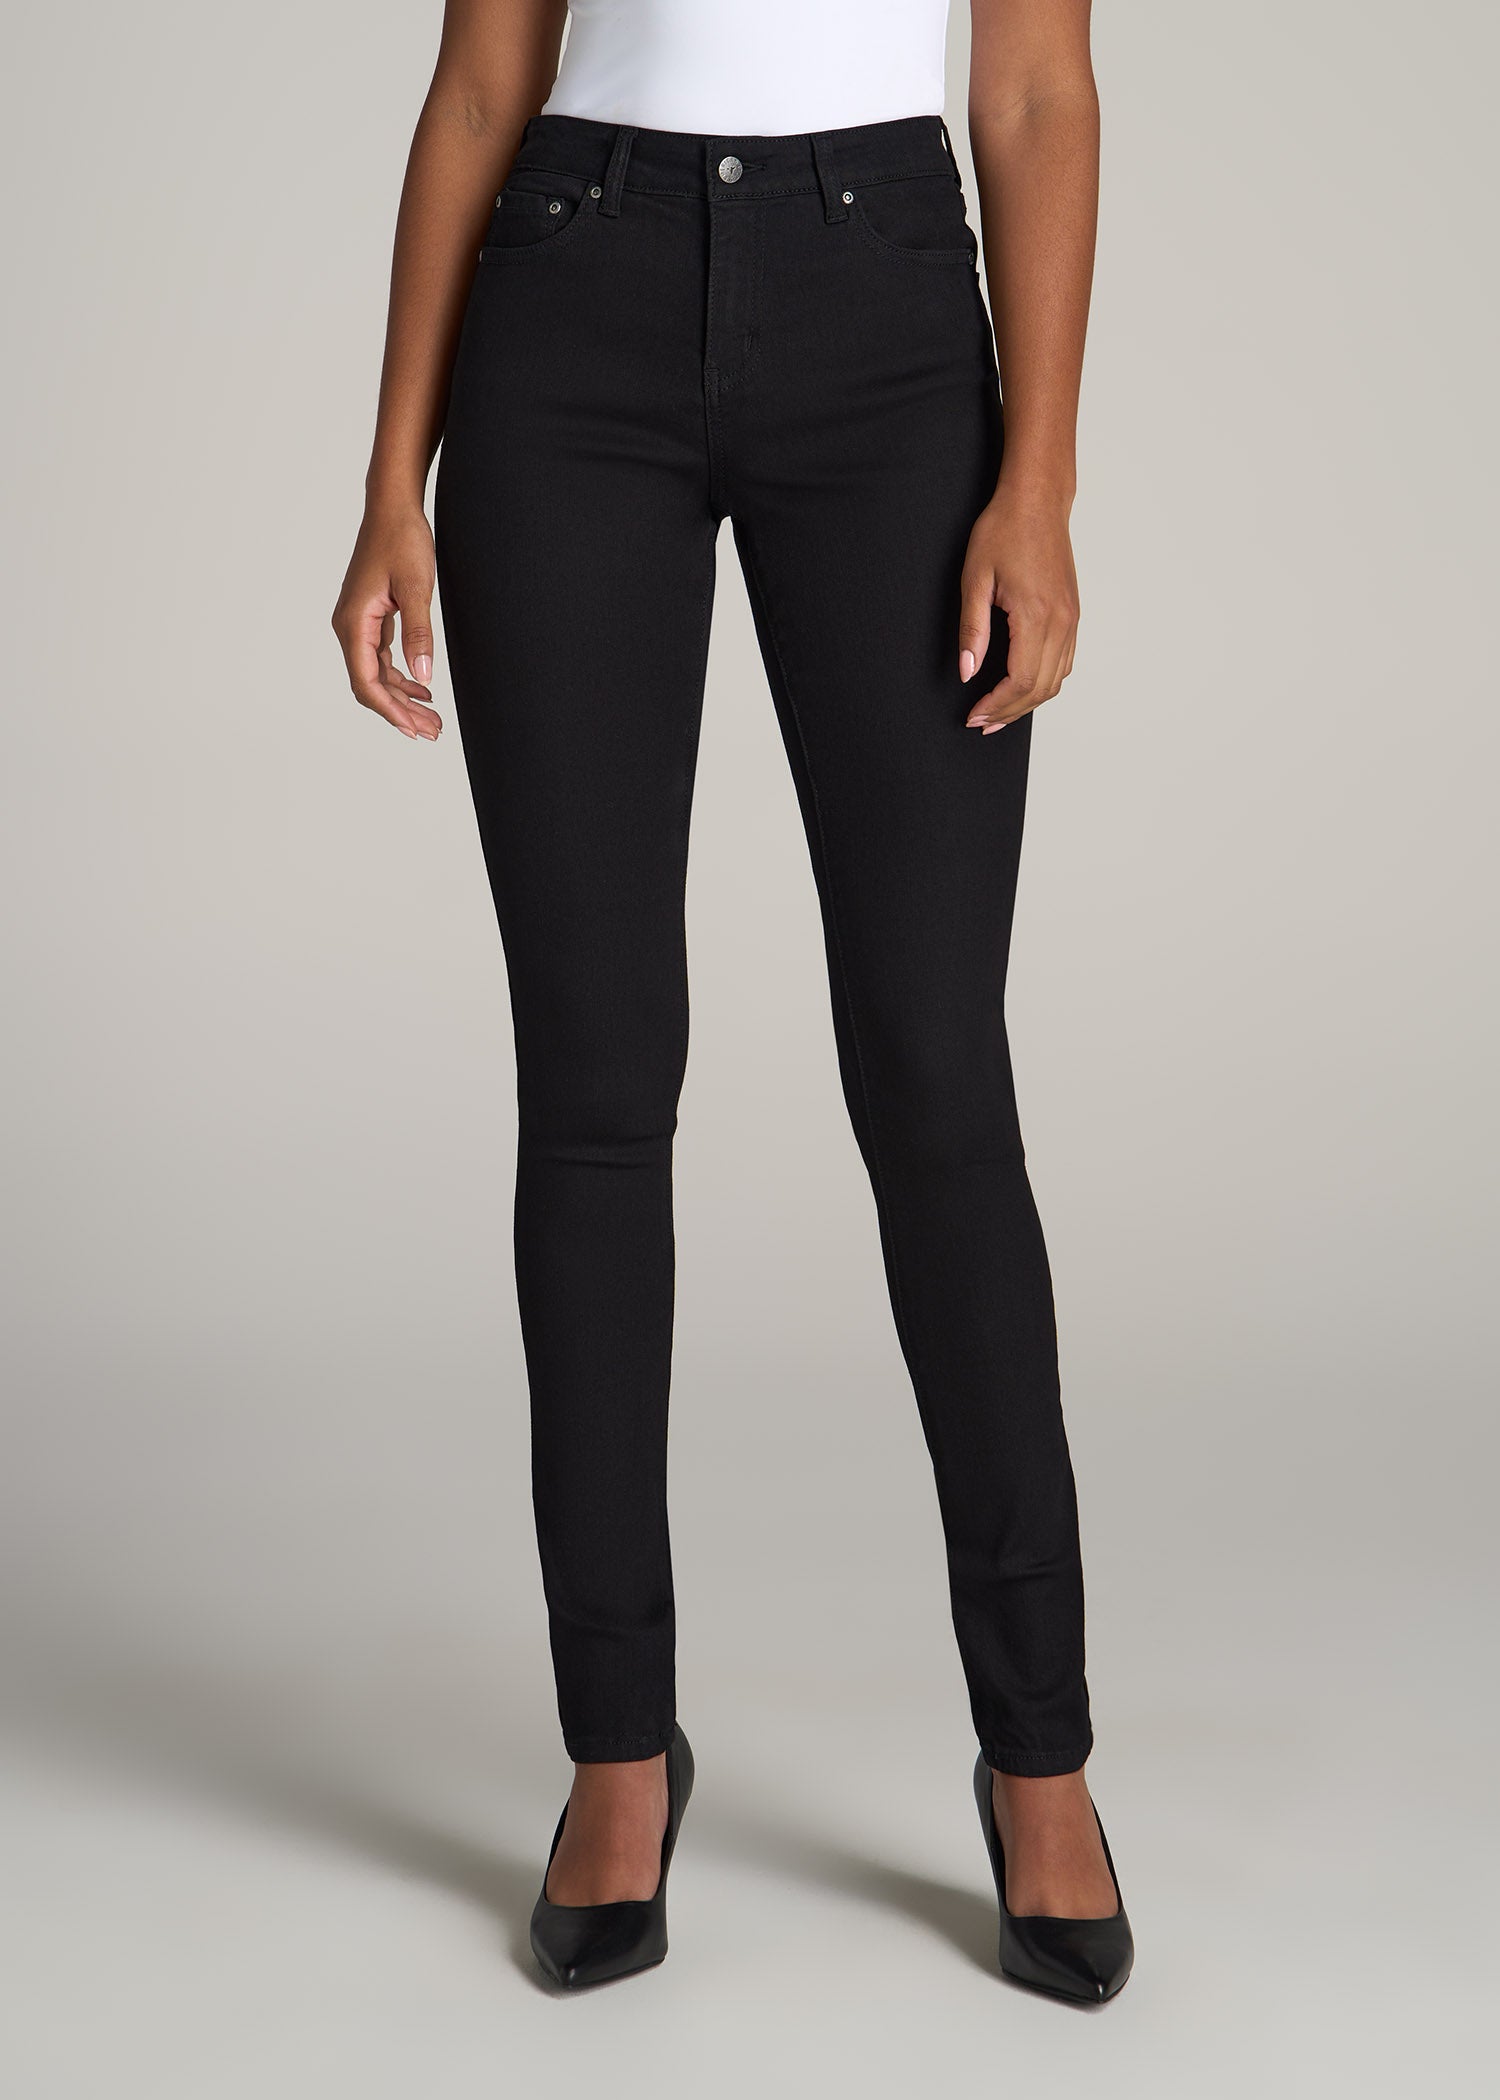 Black Tall Skinny Jeans: Tall Women\'s Black Jean | American Tall